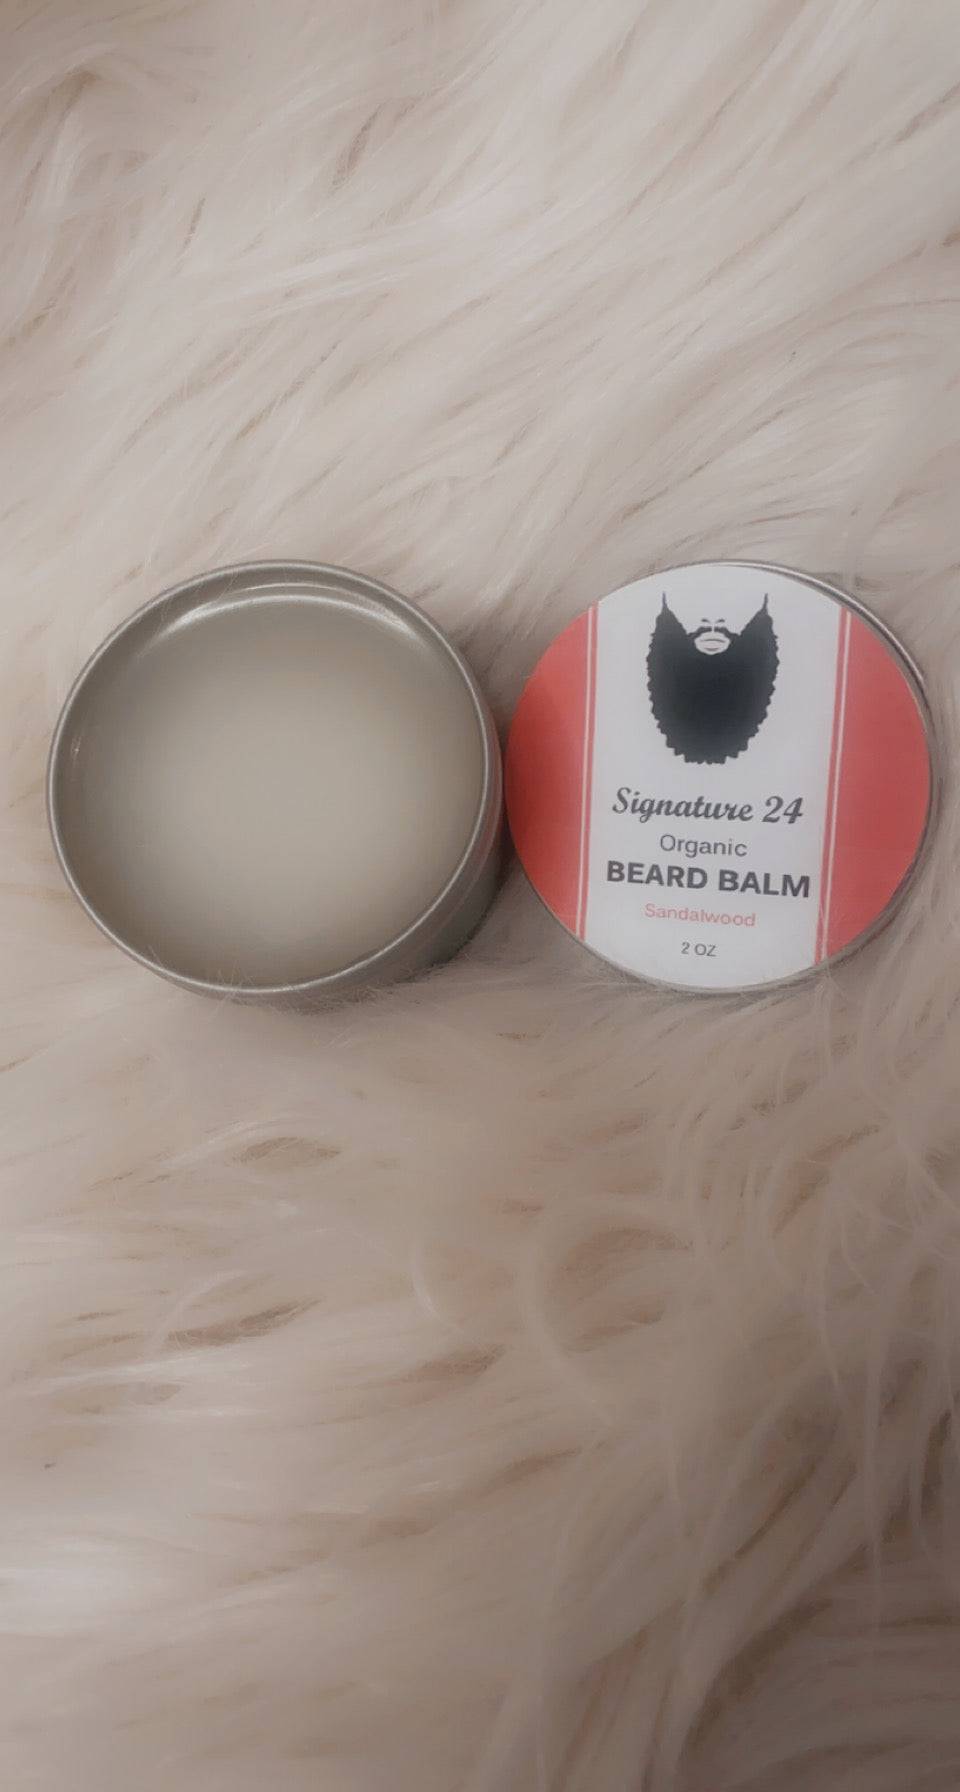 Beard balm